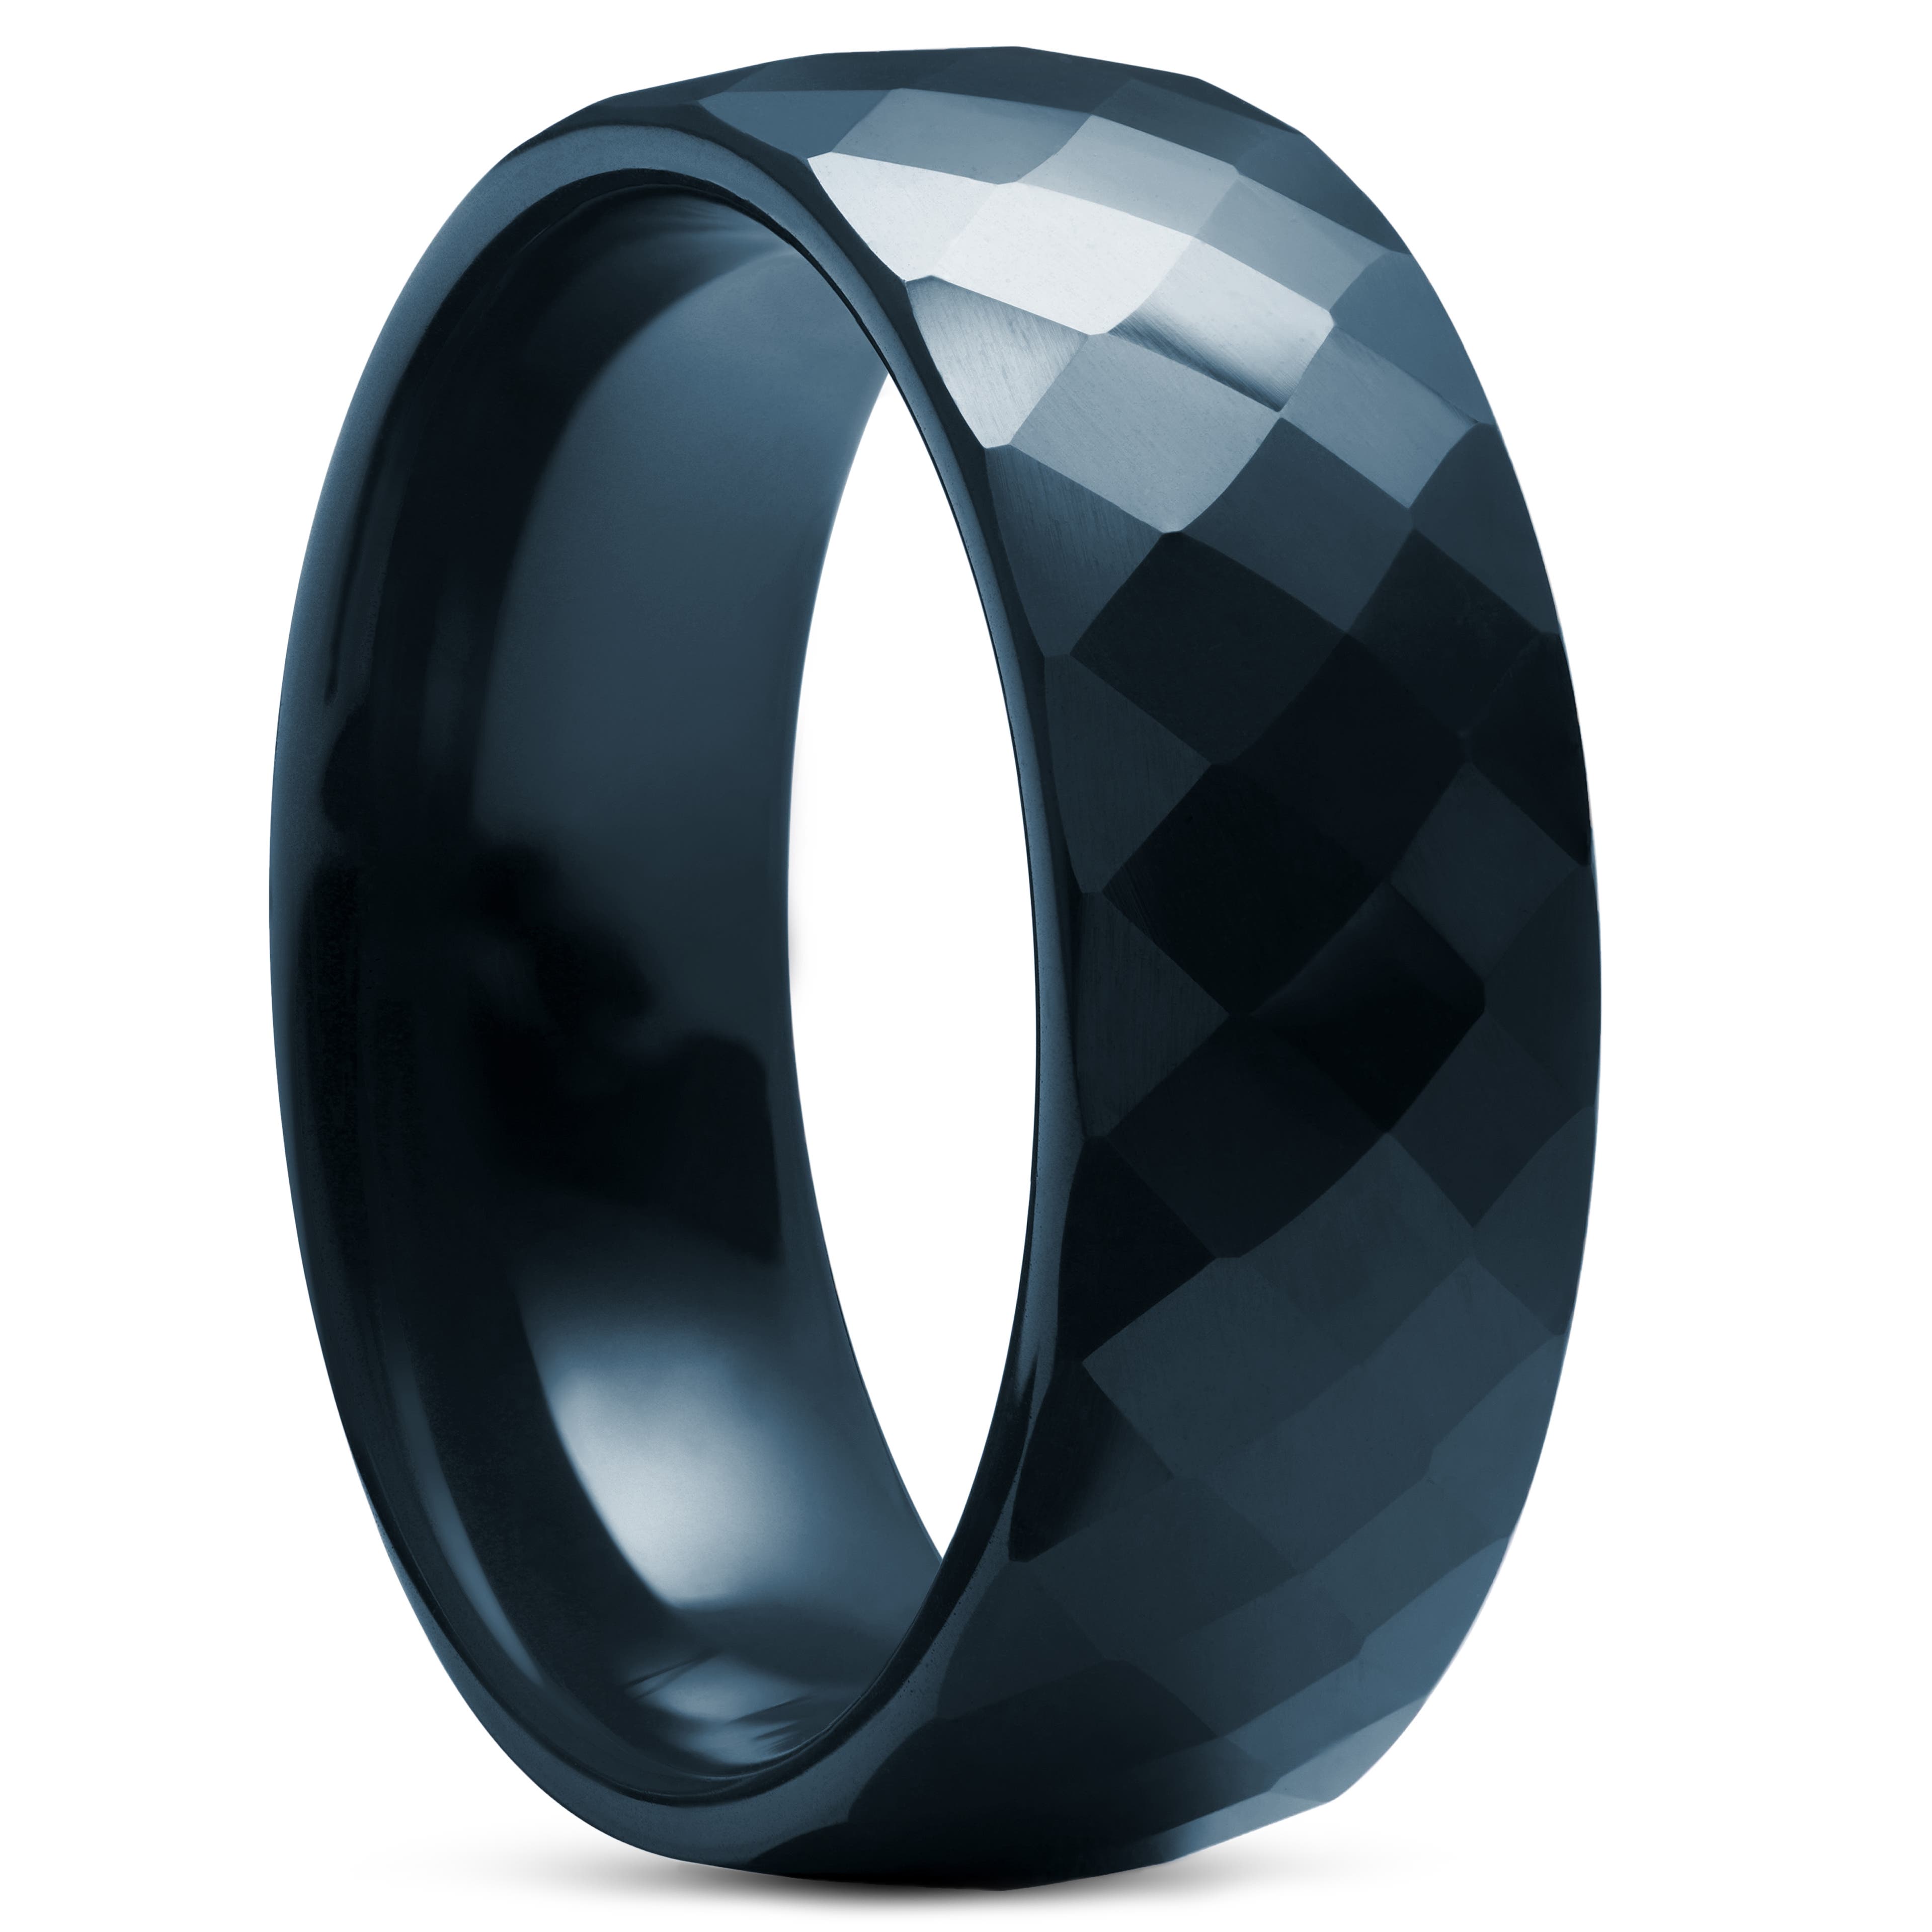 Tmavě tyrkysový fazetový keramický prsten